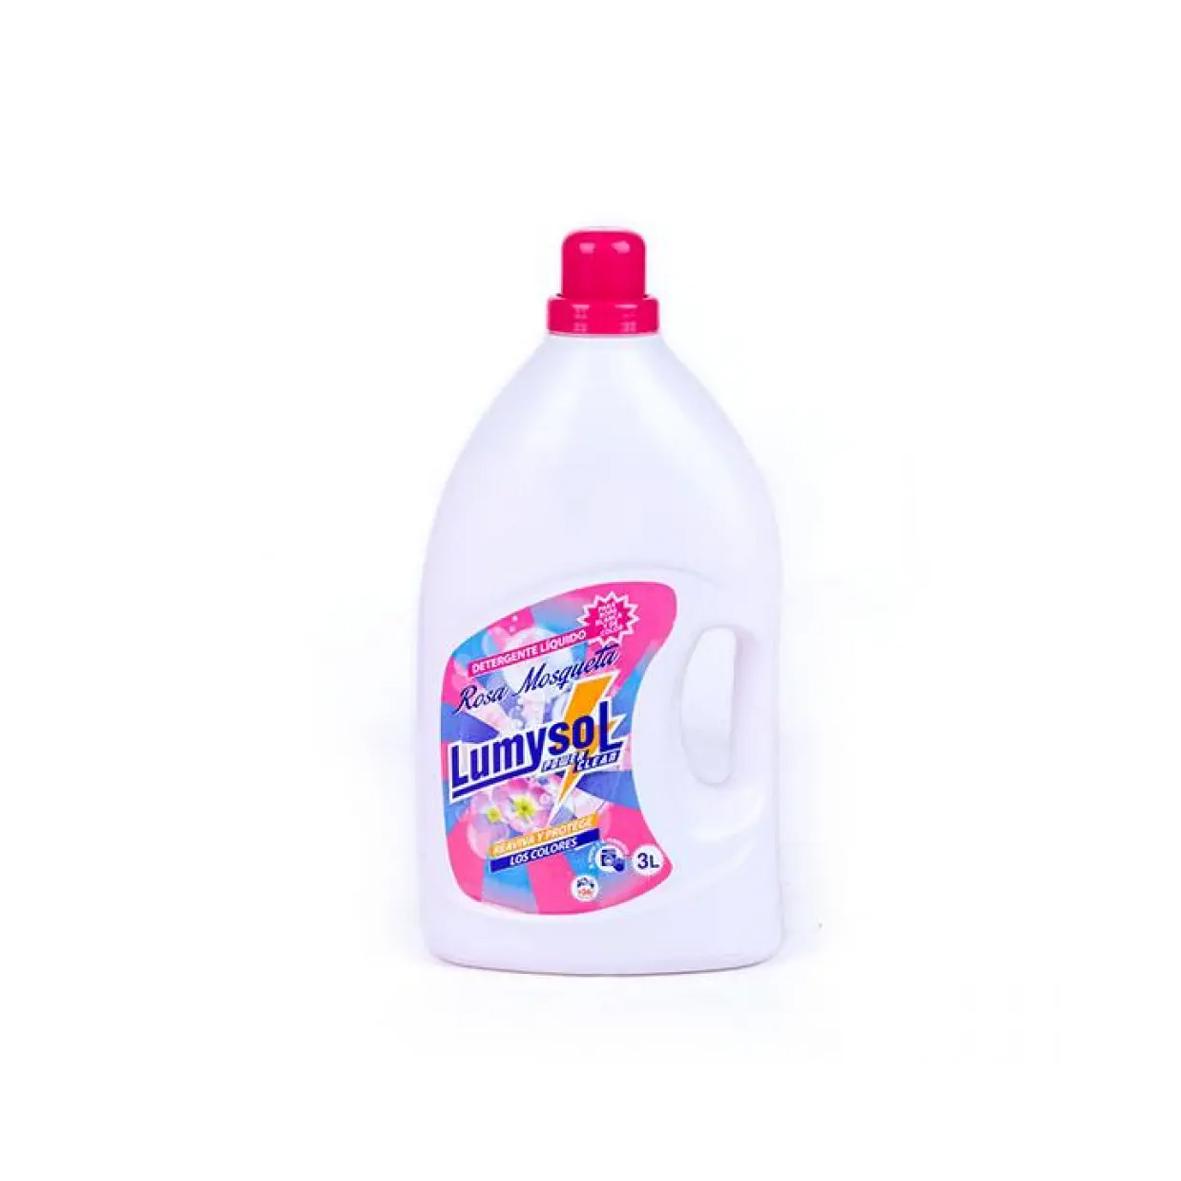 Detergente líquido para ropa de color Rosa Mosqueta Lumysol (3 L)